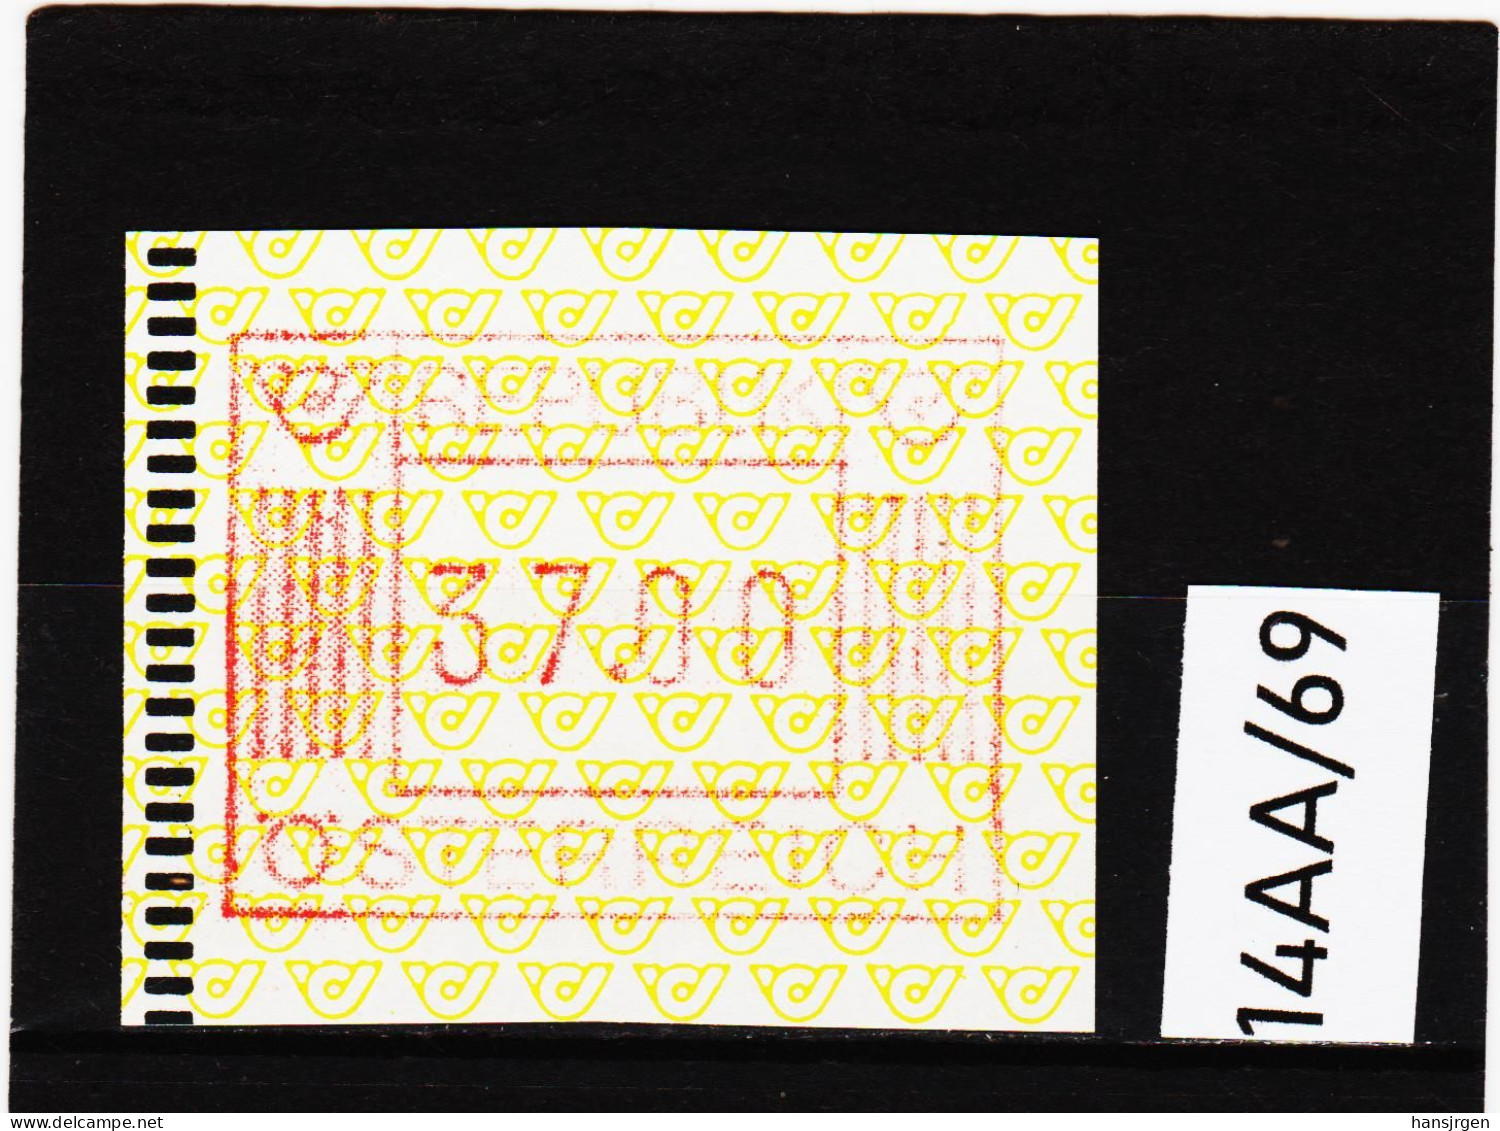 14AA/69  ÖSTERREICH 1983 AUTOMATENMARKEN 1. AUSGABE  37,00 SCHILLING   ** Postfrisch - Automatenmarken [ATM]